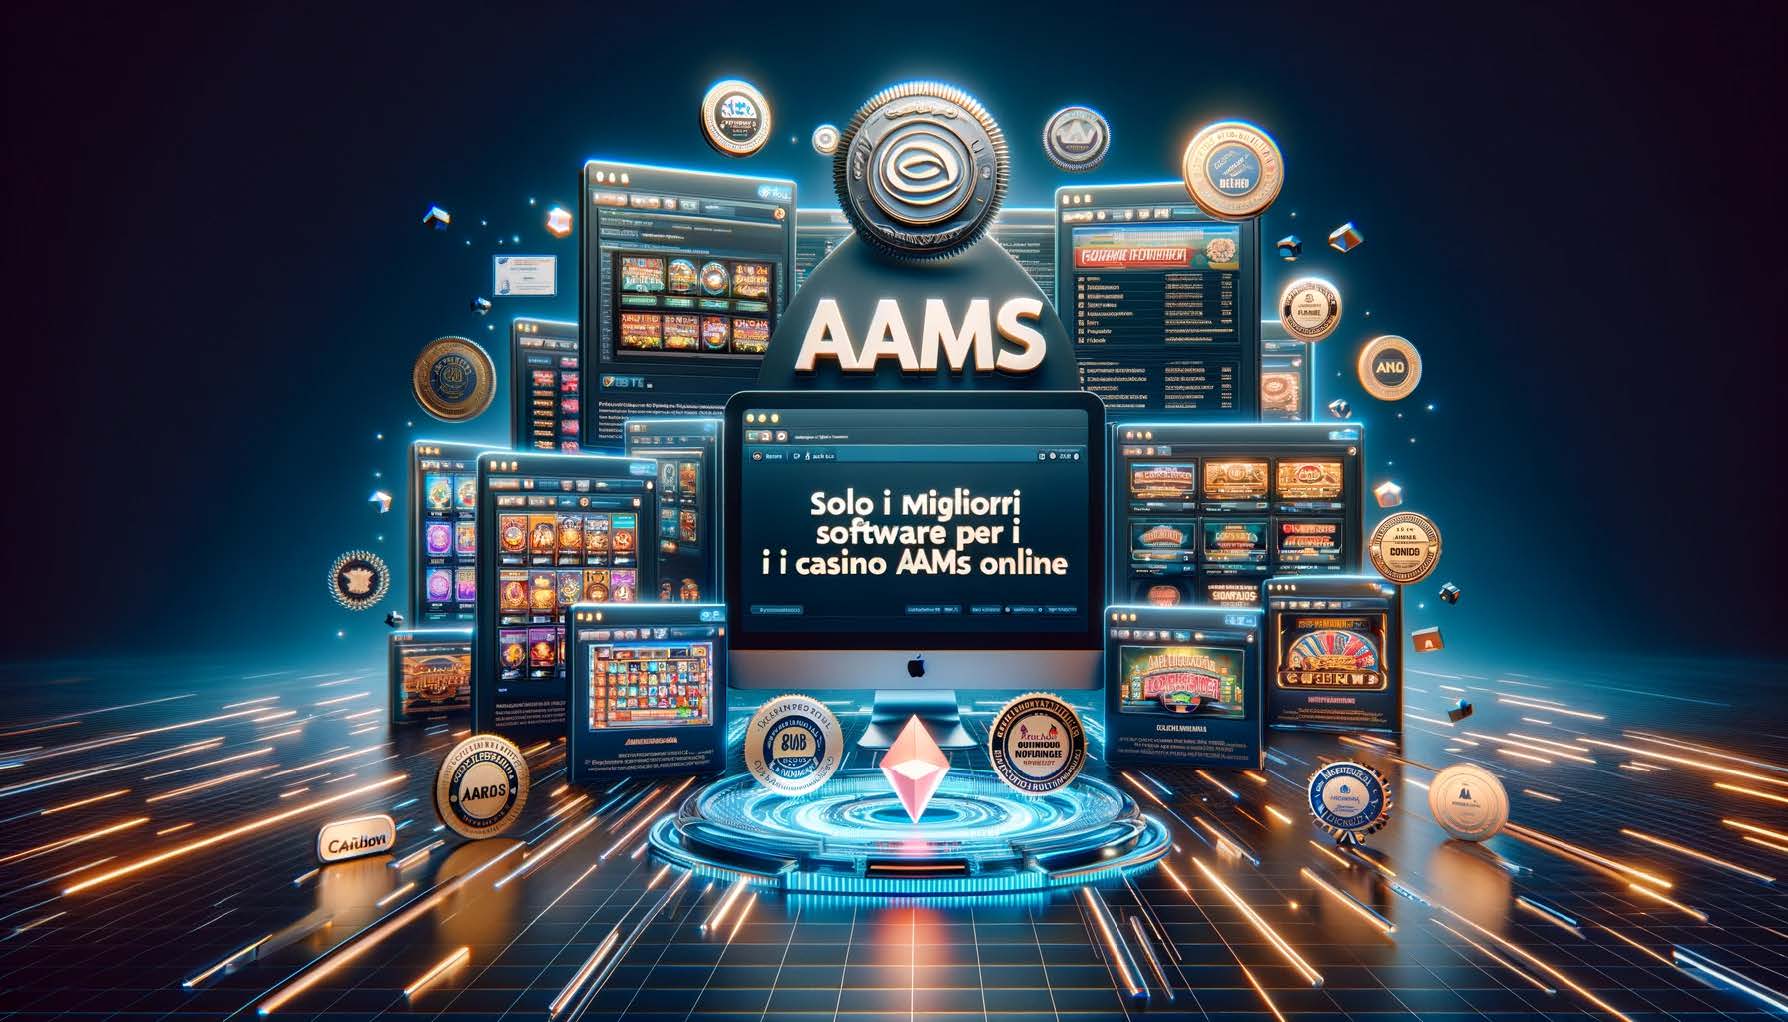 Solo i migliori Software per i Casino AAMS Online